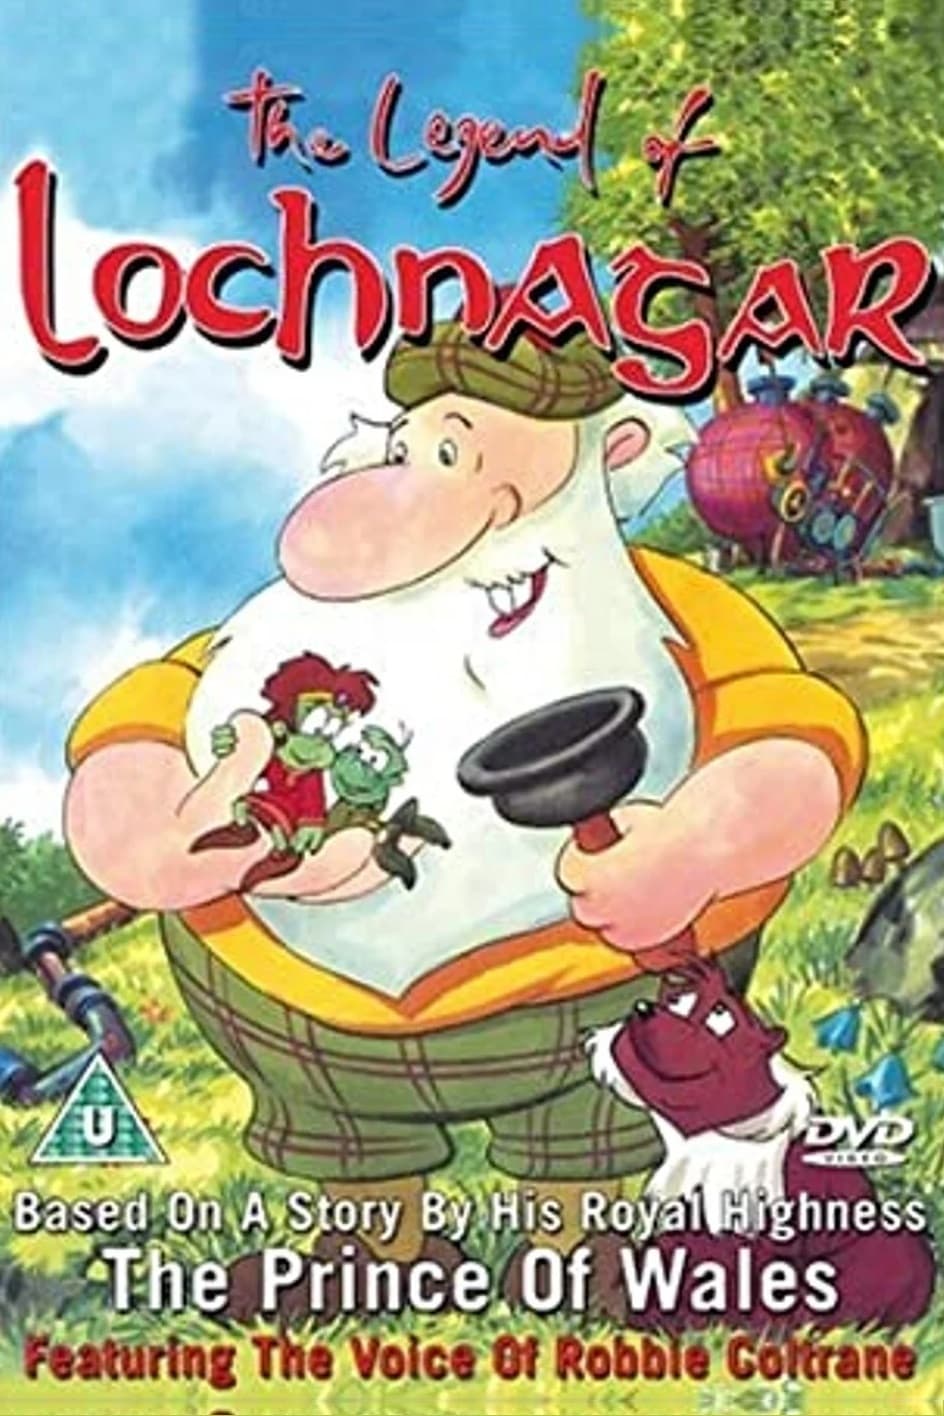 The Legend of Lochnagar